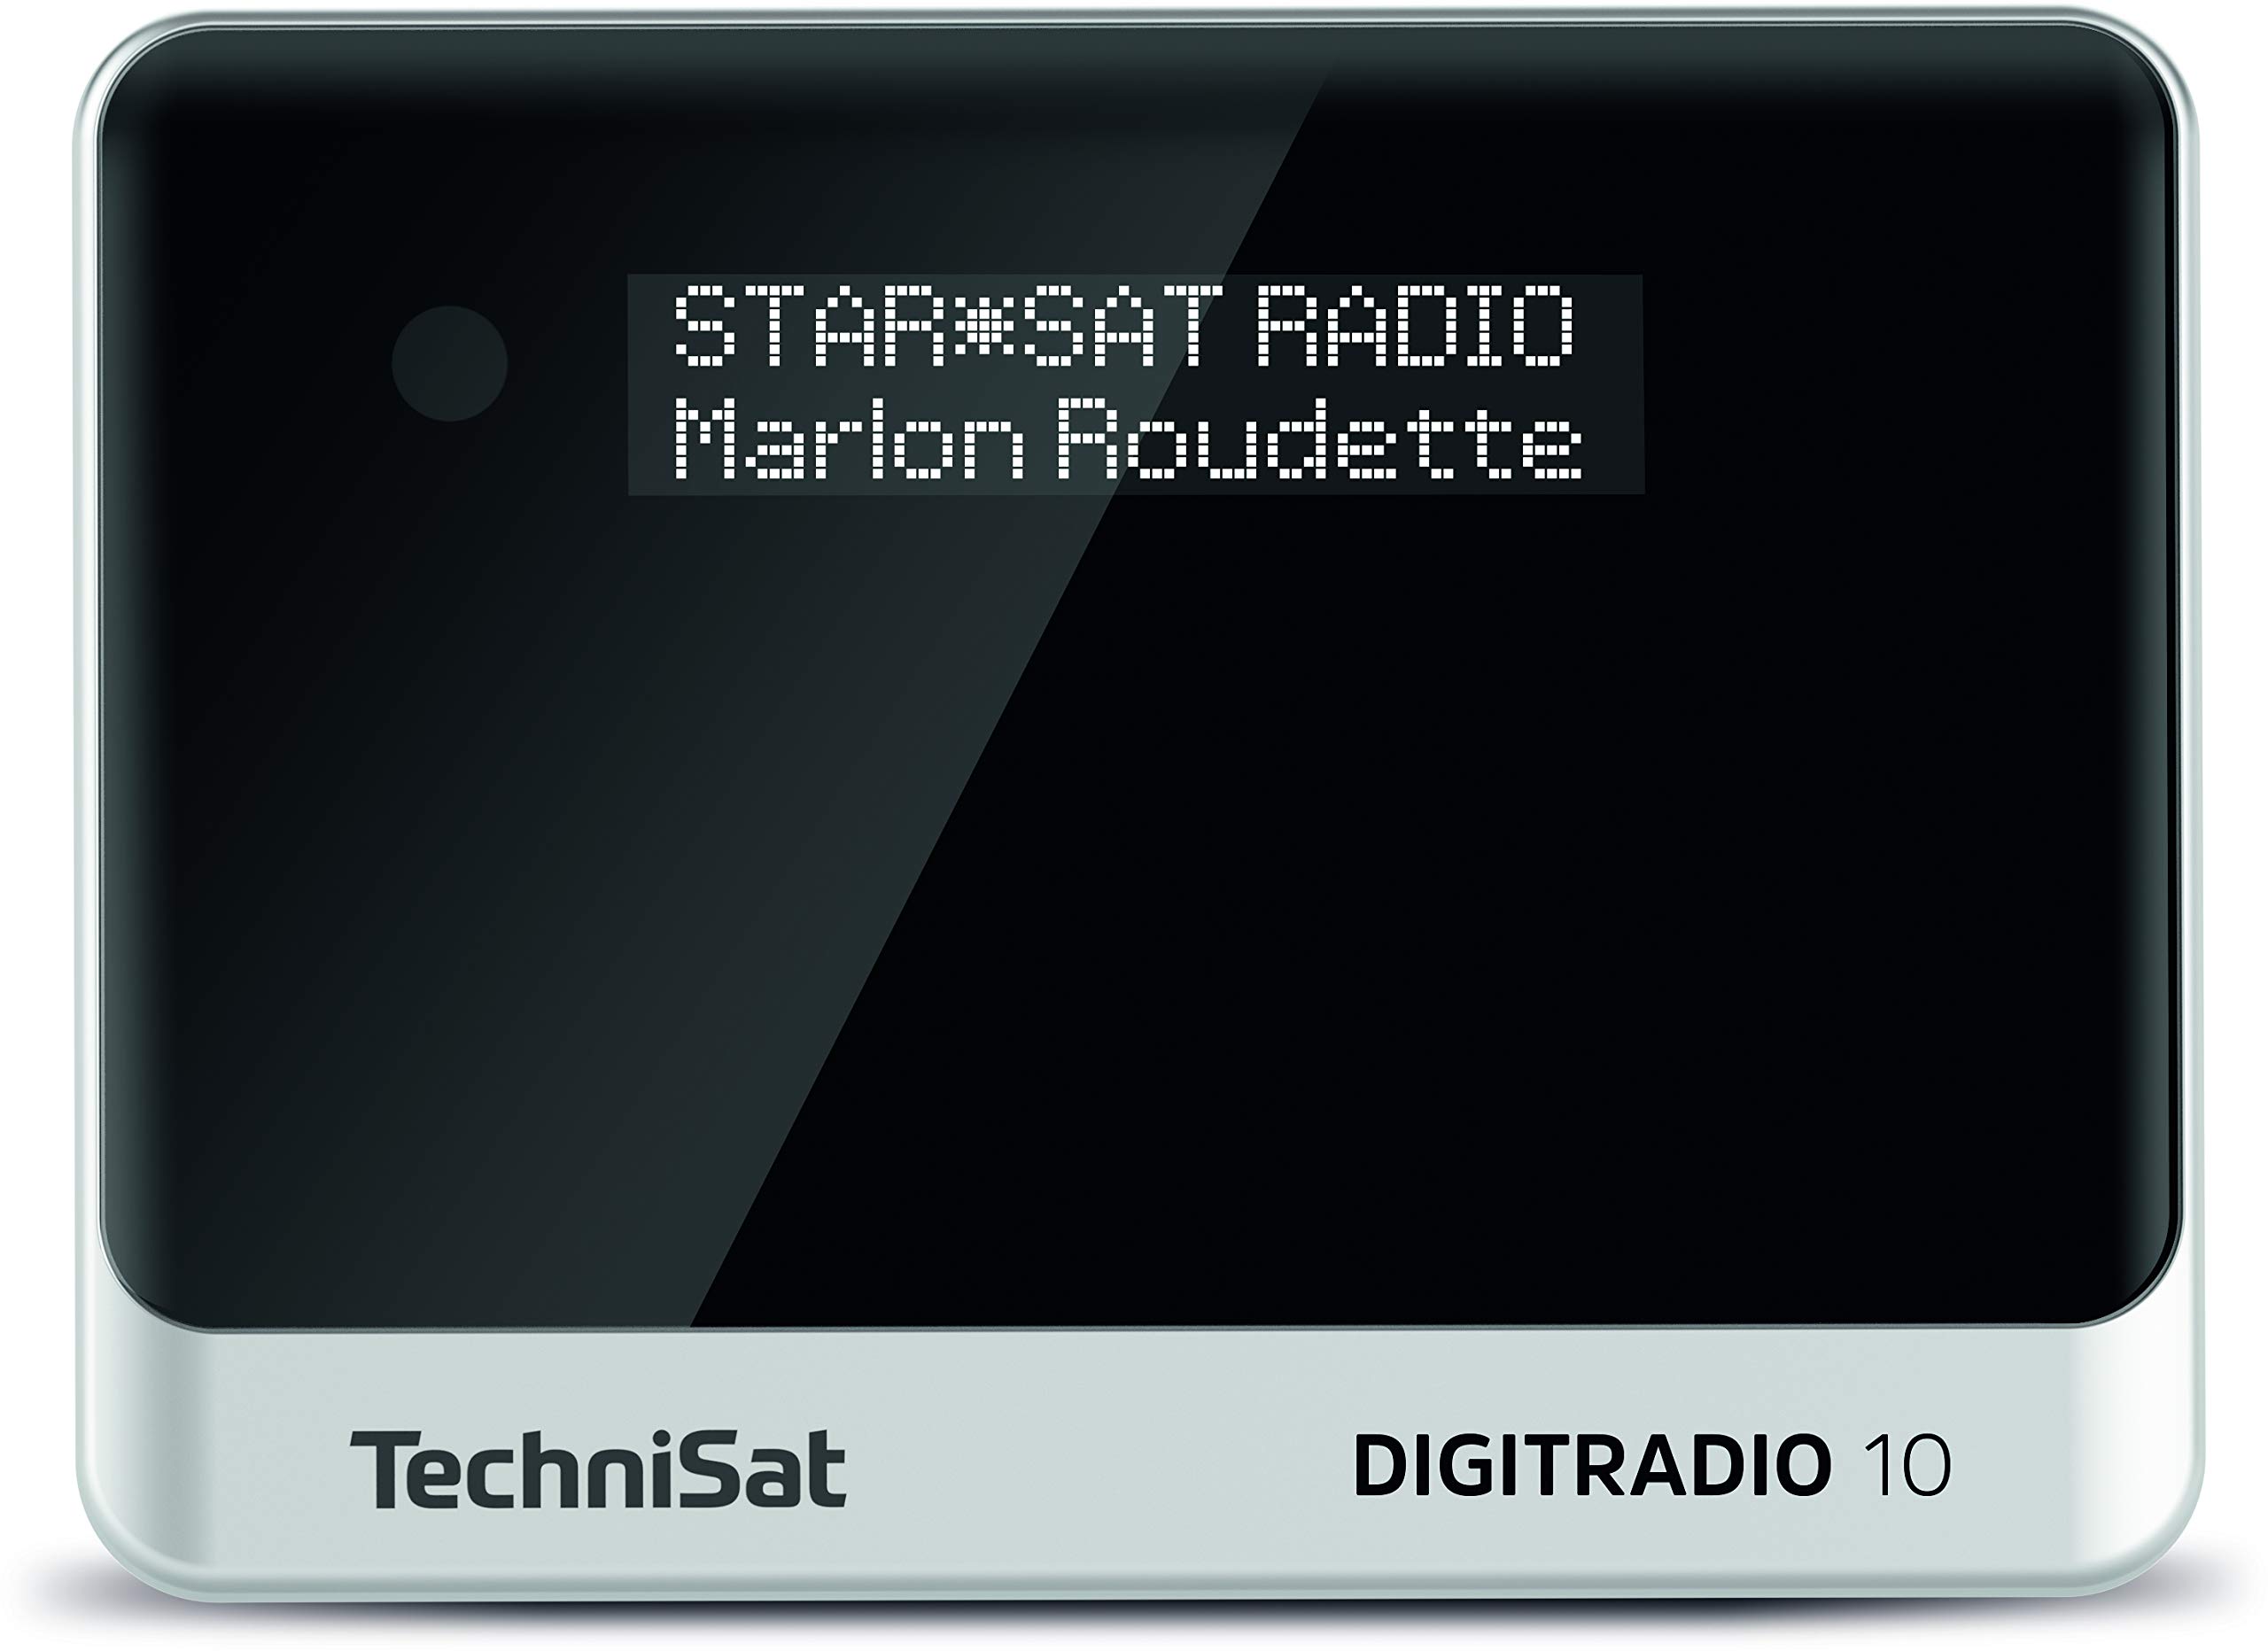 TechniSat DIGITRADIO 10 - DAB+ Digitalradio Adapter (OLED-Display, Bluetooth, Fernbedienung, Wecker, optimal zur Aufrüstung bestehender HiFi-Anlagen) schwarz/silber